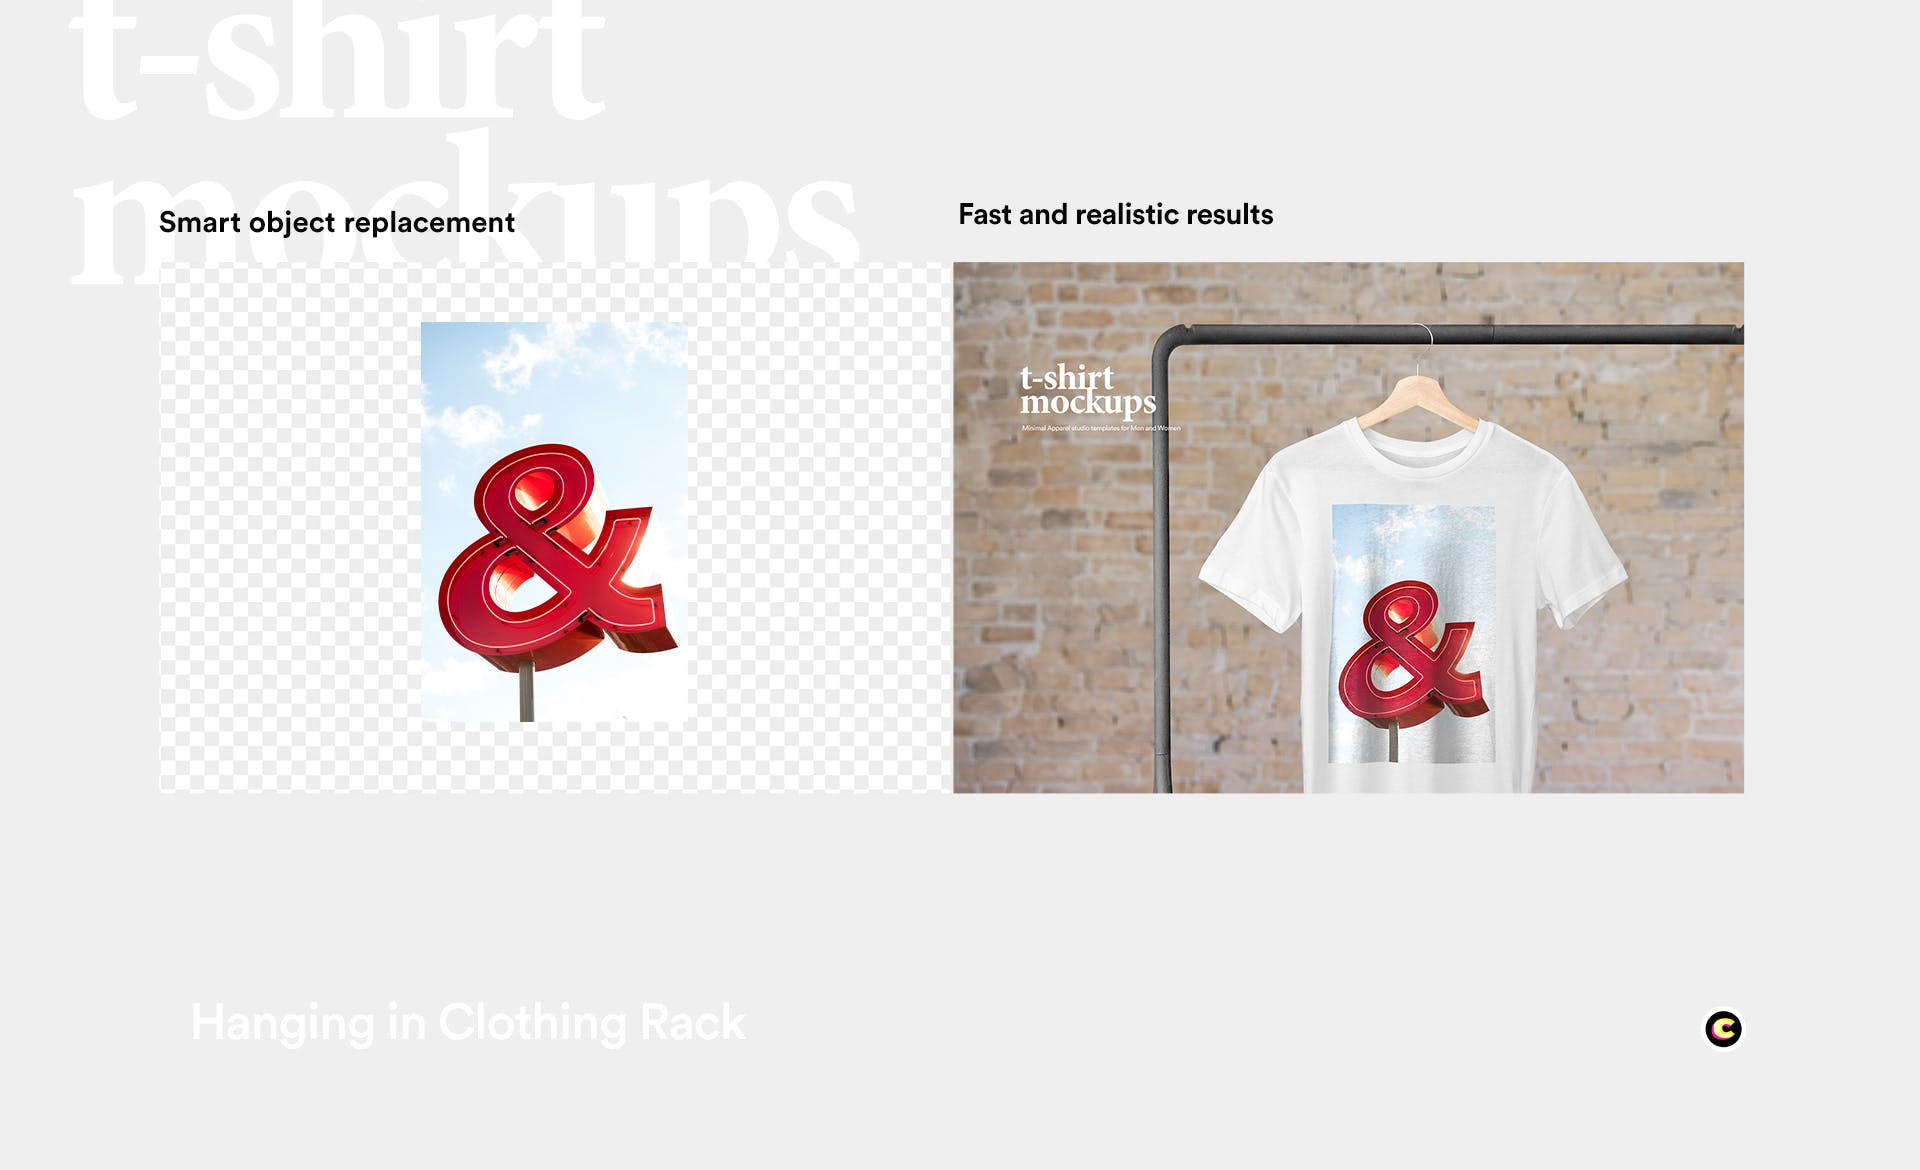 晾晒状态T恤产品展示样机第一素材精选模板 Hanging T-Shirt Mockup插图(2)